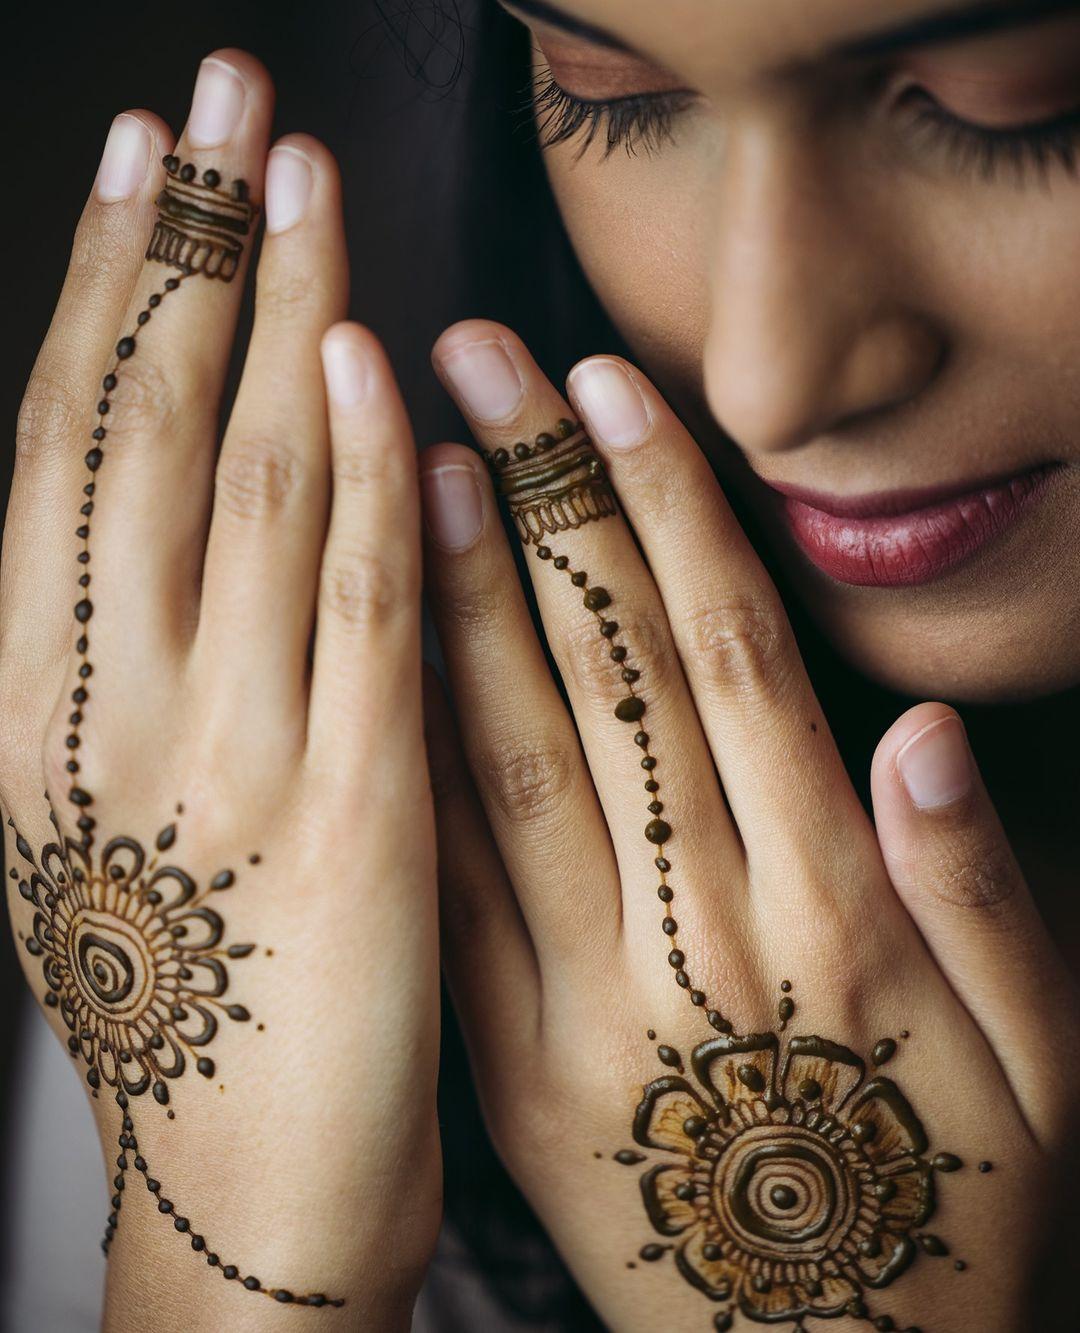 Engagement ring mehndi design | Ring mehndi design, Wedding mehndi designs, Mehndi  designs